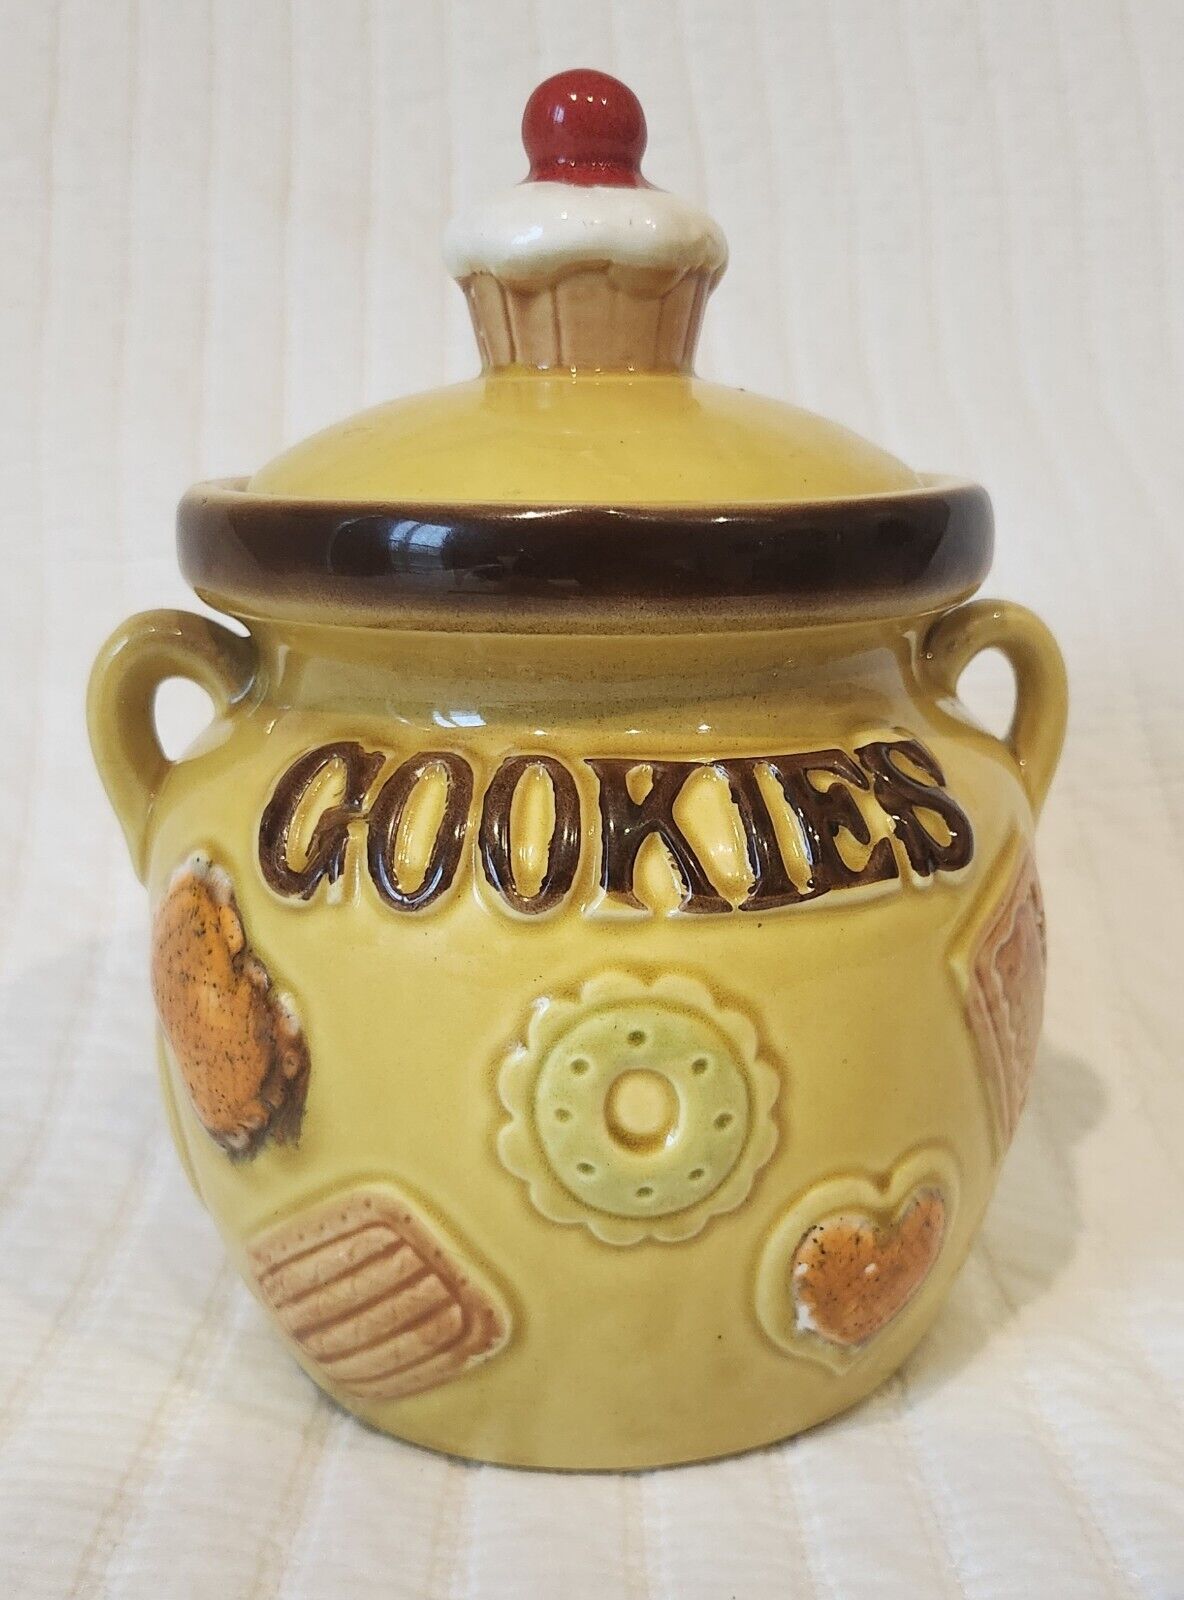 Vintage 1960s Japan “Cookies All Over” Cookie Jar - Cupcake Lid - Handpainted 9